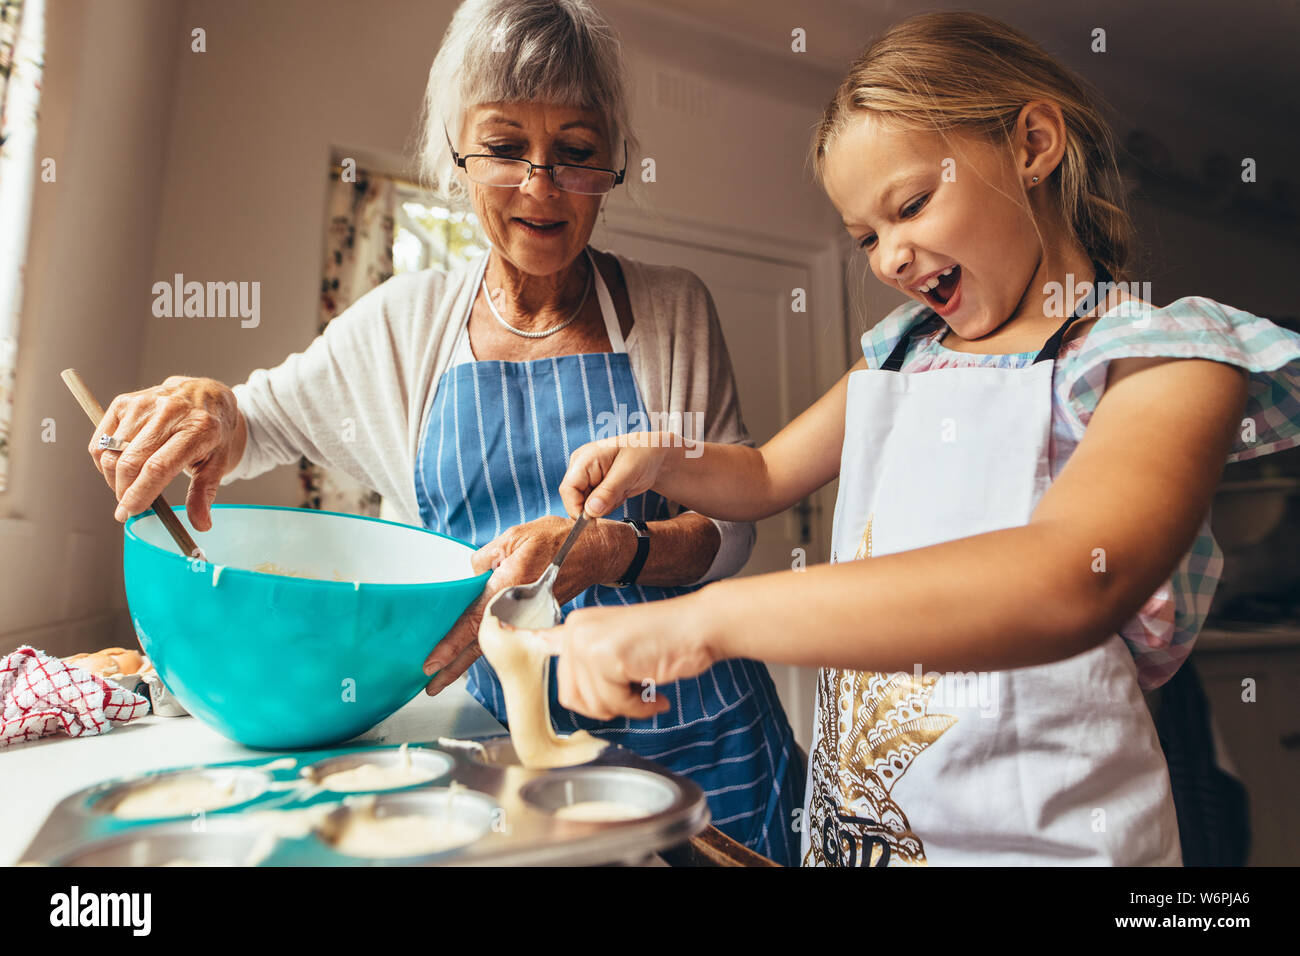 Kleines Mädchen lernen cup cakes mit ihrer Großmutter zu machen. Aufgeregt Mädchen gießen Kuchenteig in Cup Cake formen. Stockfoto